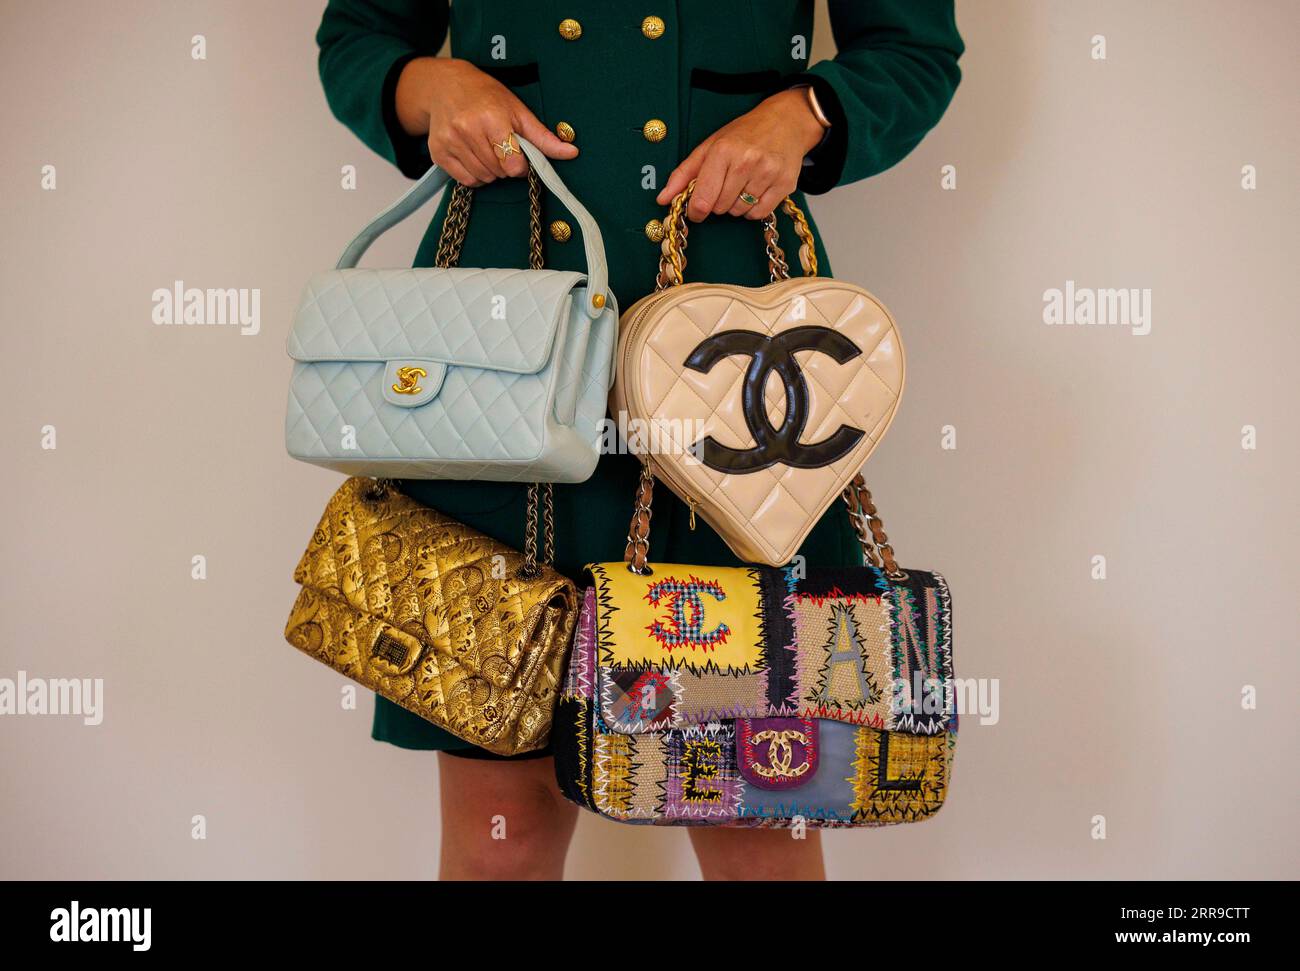 Londra, Regno Unito. 7 settembre 2023. Selezione AV di borse Chanel che saranno in vendita. Bonhams è pronto a far luce sul mondo di Chanel. In coincidenza con l'apertura della mostra V&AÕs Gabrielle Chanel Fashion Manifesto, Bonhams Knightsbridge ospiterà The Art of Luxury: Chanel, la loro seconda vendita londinese dedicata all'artigianato di Chanel. I saldi online del 11-21 settembre presenteranno articoli di lusso della Maison, tra cui borse, gioielli e una selezione di alta moda, tutti realizzati a mano nell'atelier Chanel. Crediti: Mark Thomas/Alamy Live News Foto Stock